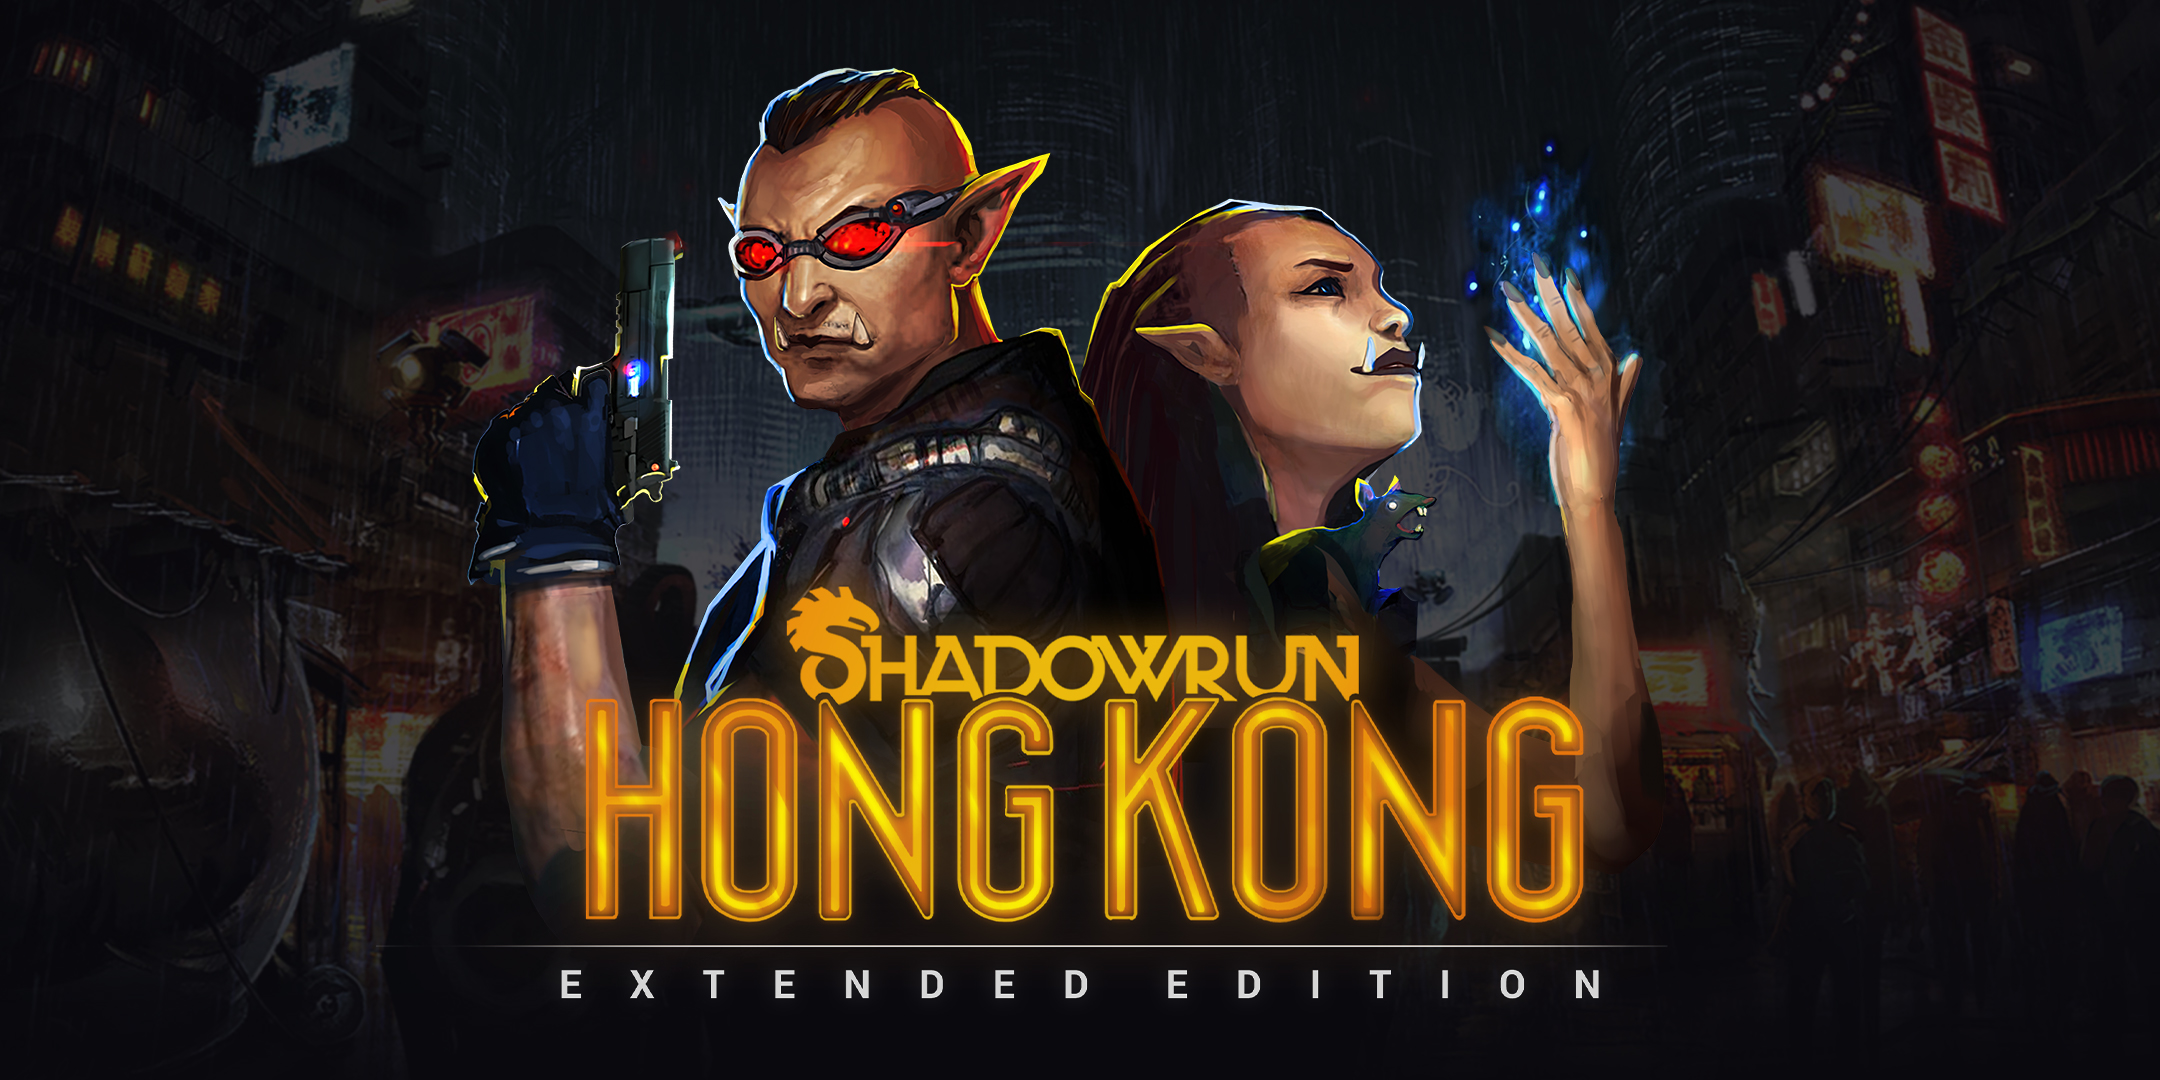 Thoughts: Shadowrun Hong Kong